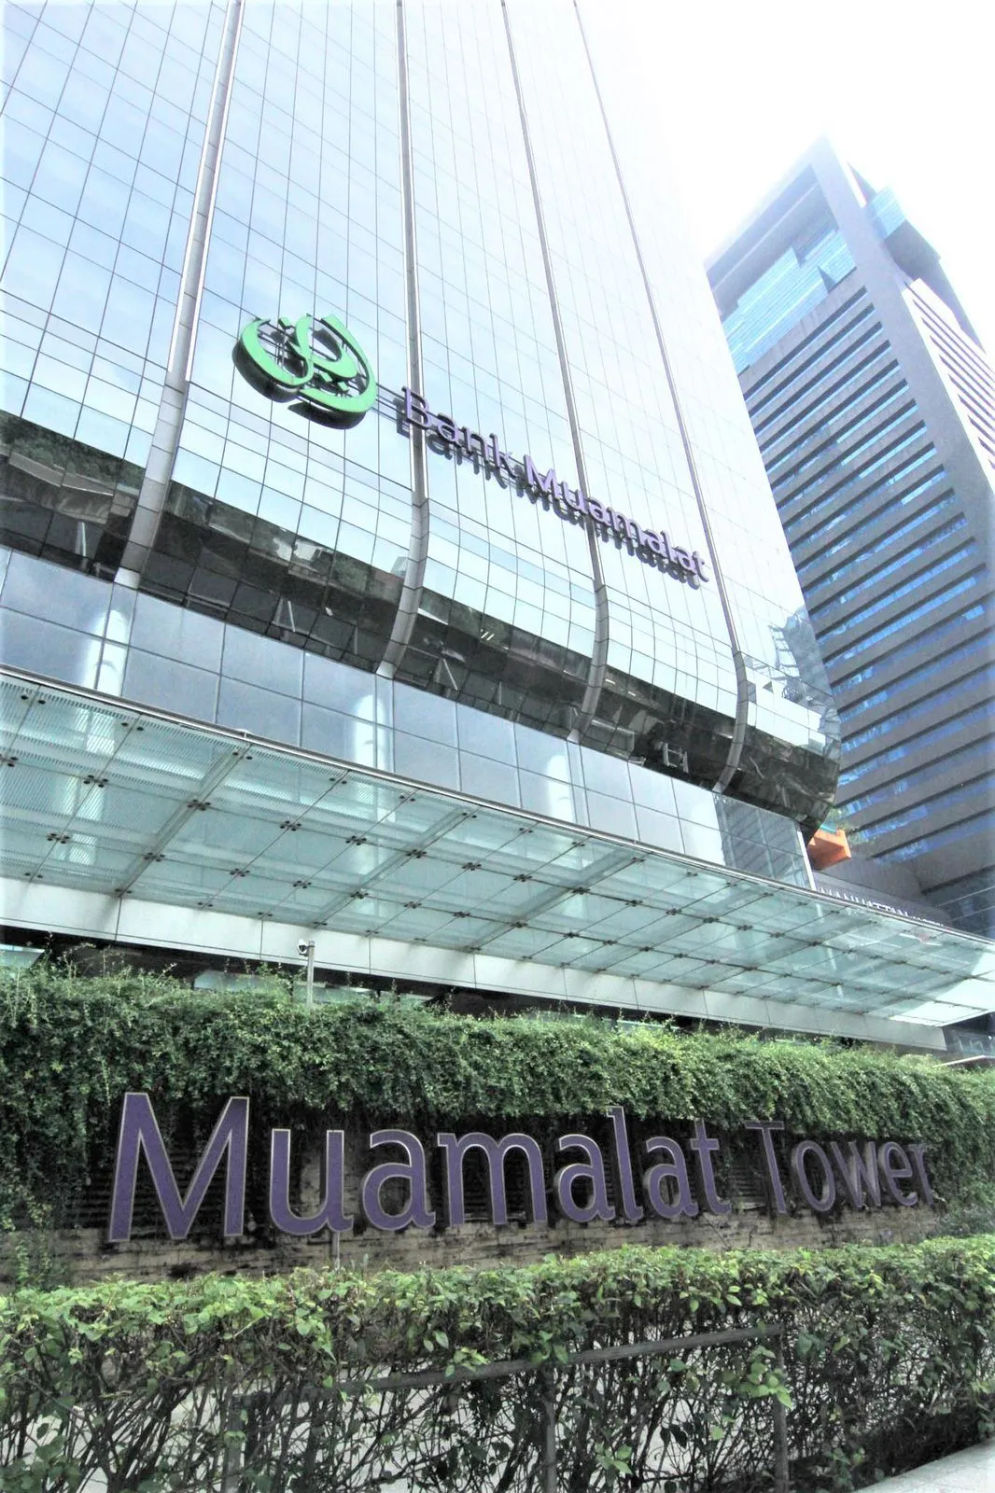  PT Bank Muamalat Indonesia Tbk menjalin kerja sama pemberian referensi fasilitas pembiayaan properti dengan PT Loan Market Indo. 